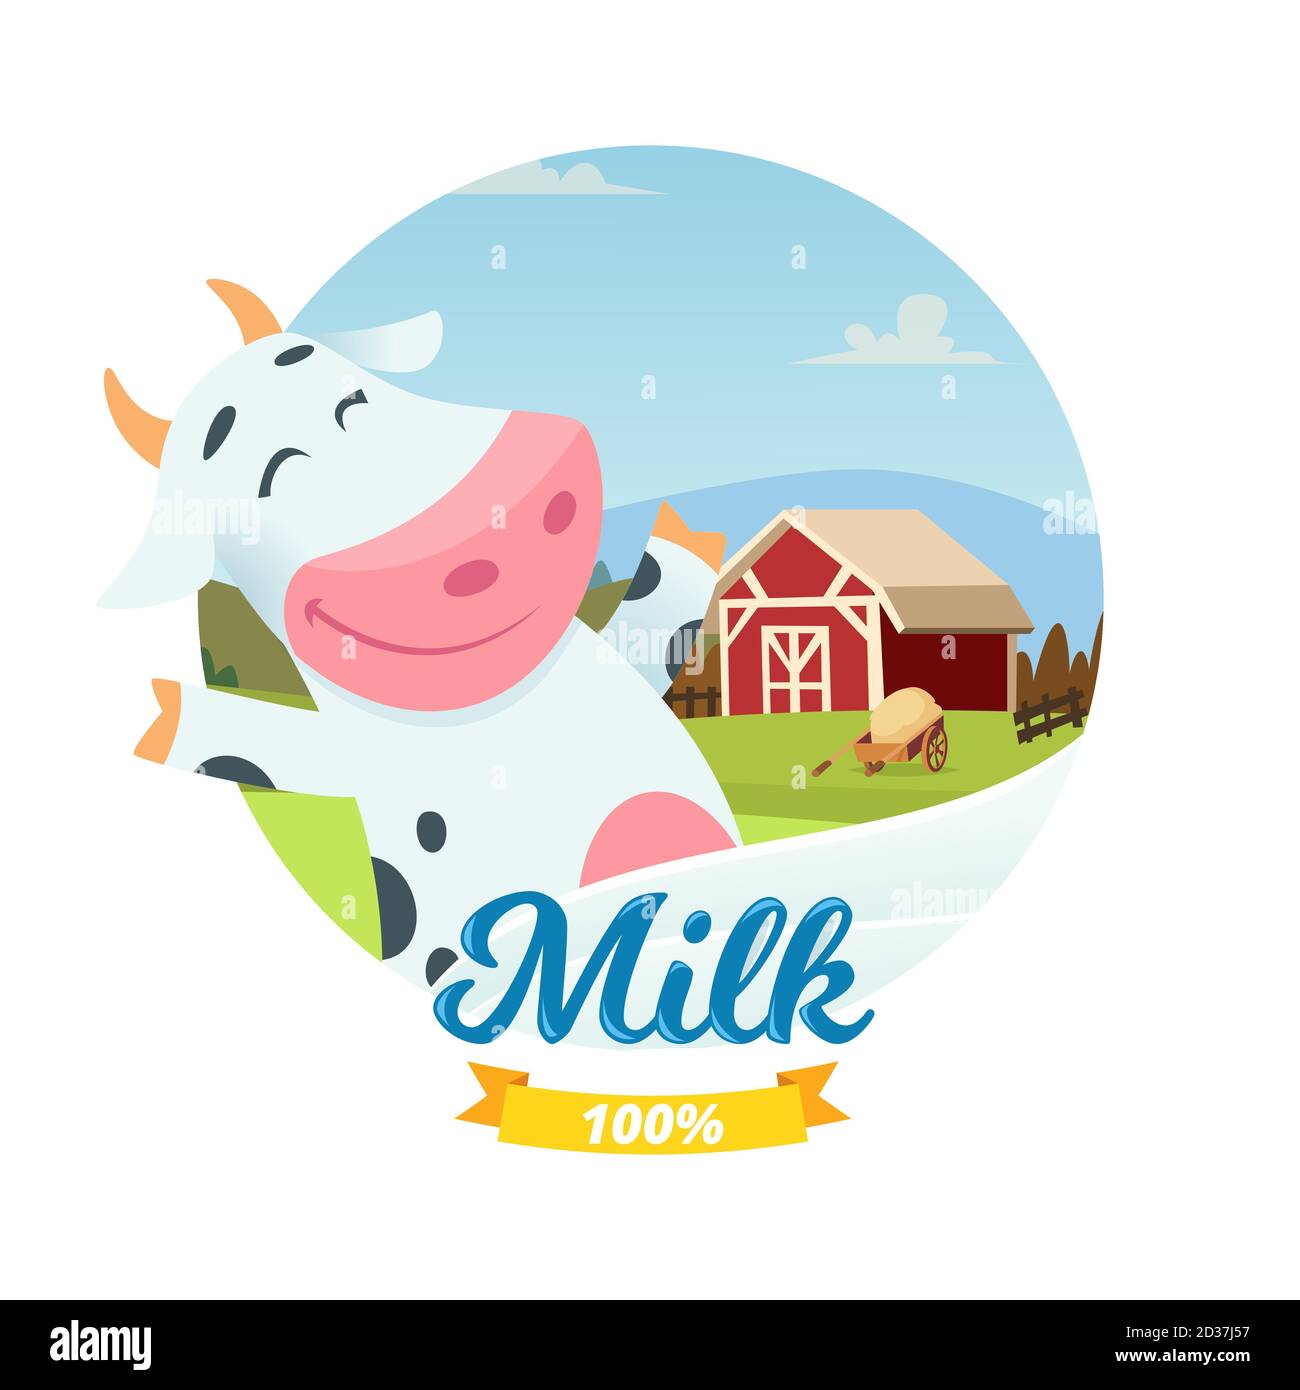 Frische Bauernhof Milch Vektor-Banner mit Cartoon-Charakter glücklich Kuh Stock Vektor